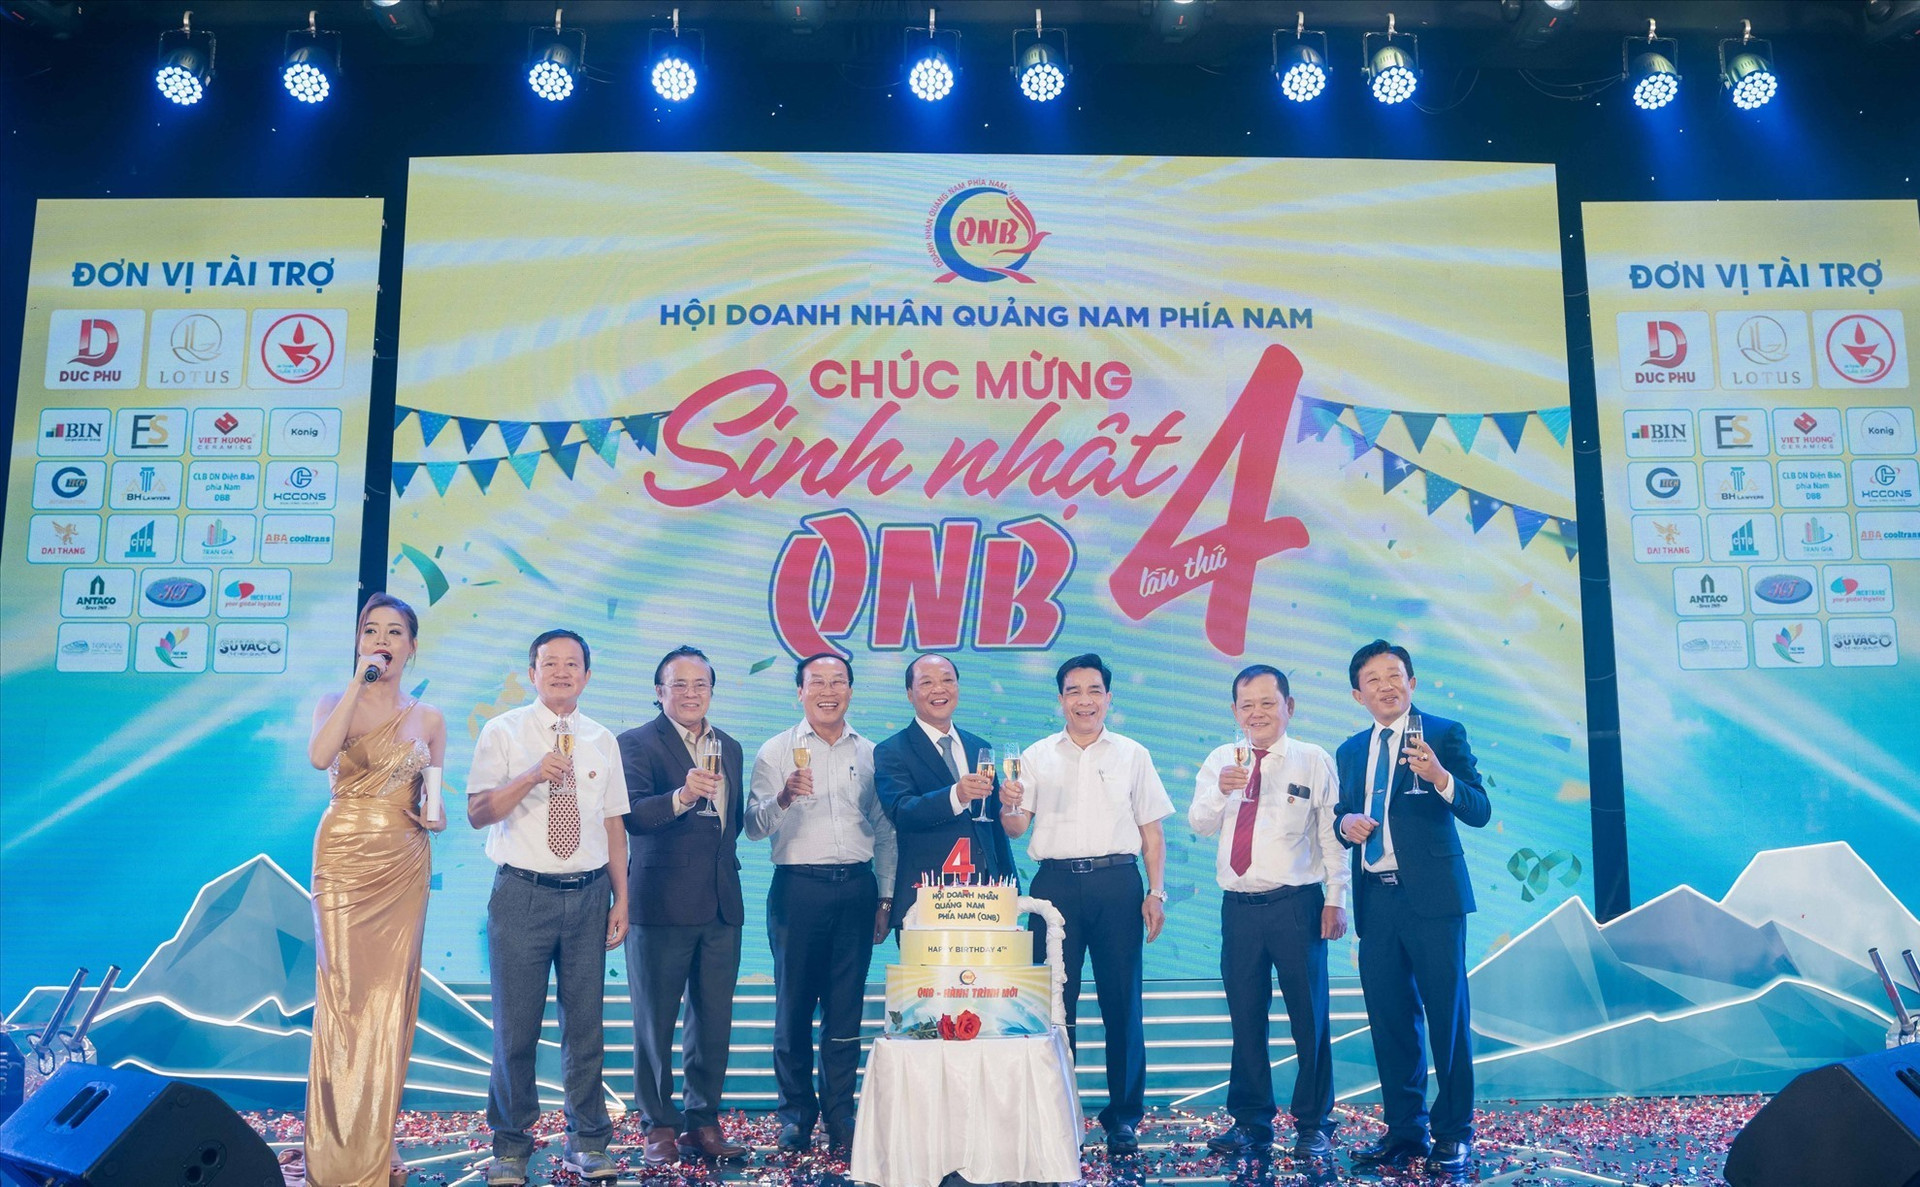 Các đồng chí lãnh đạo tỉnh cùng đại diện Hội doanh nhân Quảng Nam phía Nam thực hiện nghi thức mừng sinh nhật QNB 4 tuổi. Ảnh: PHAN VINH